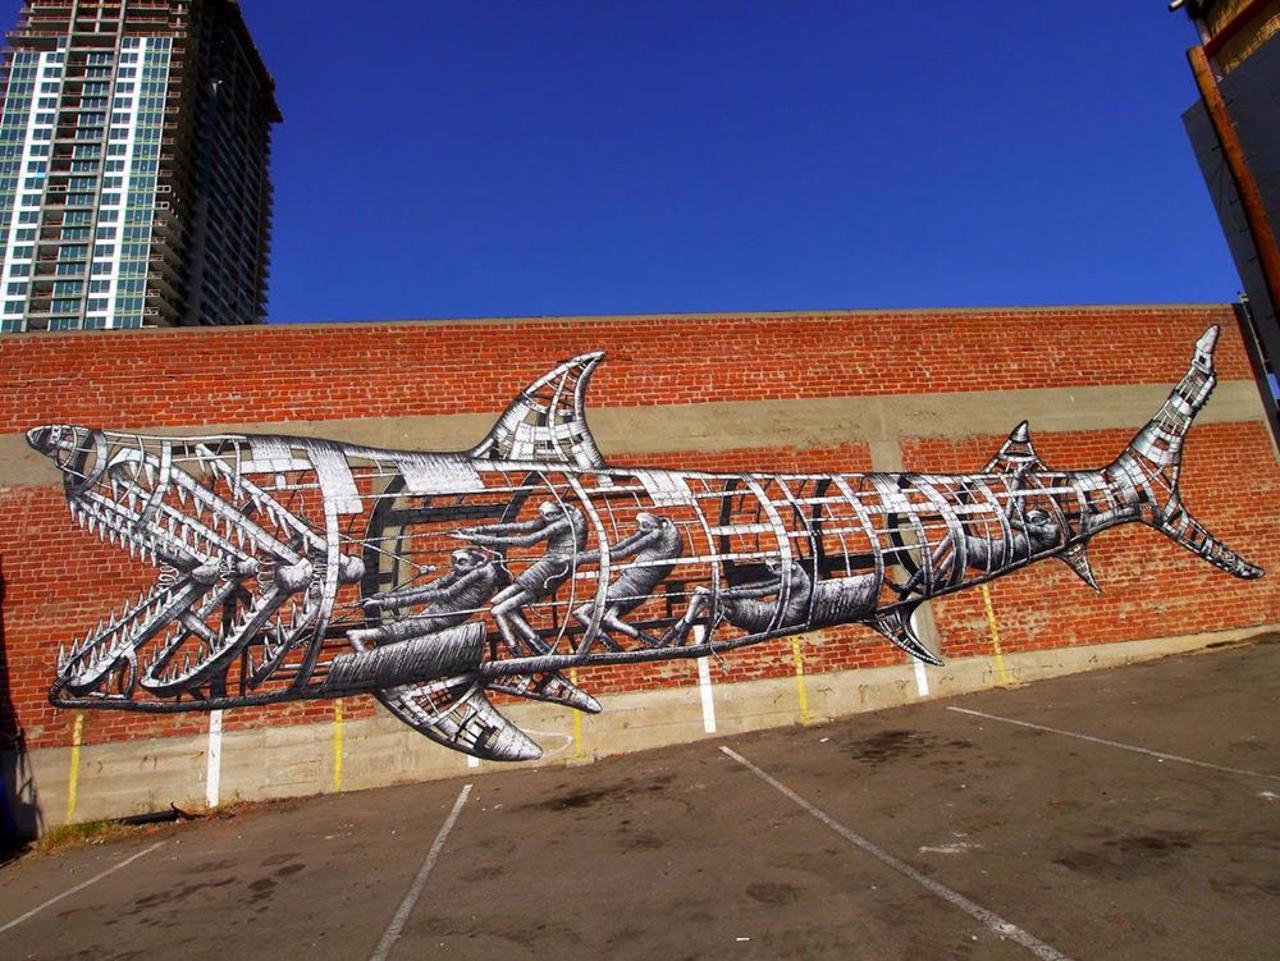 RT @DanielGennaoui Coolest mechanical shark mural. Check out more: http://buff.ly/1xsCQDL #graffiti #urbanart #artist http://t.co/Mmo8DcsJDs